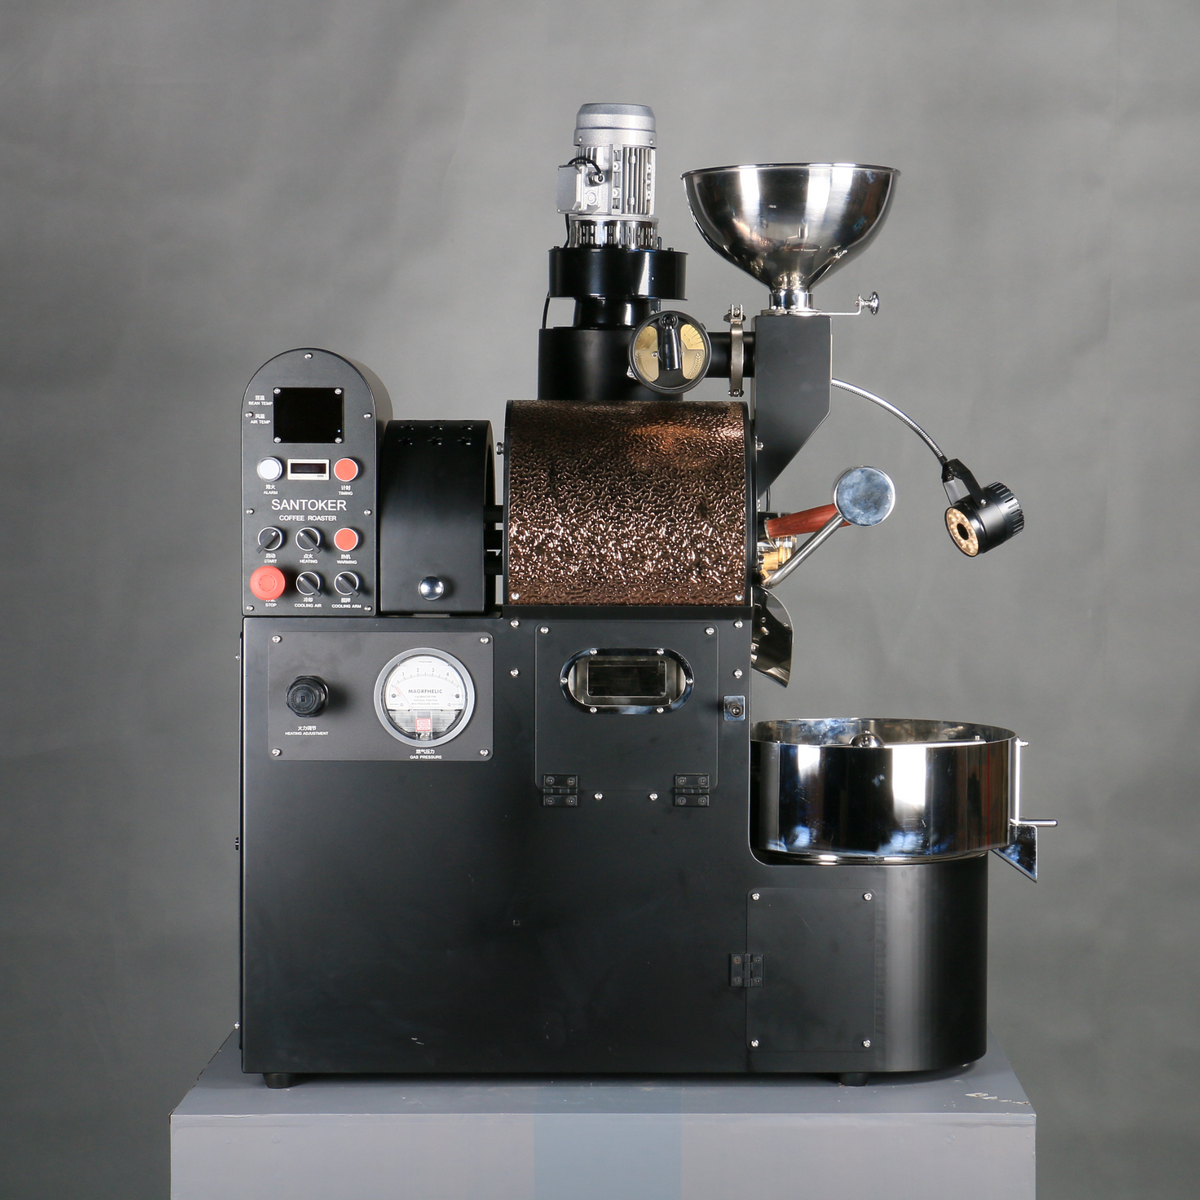 Santoker R3 Manual Coffee Roaster - 3kg/Batch